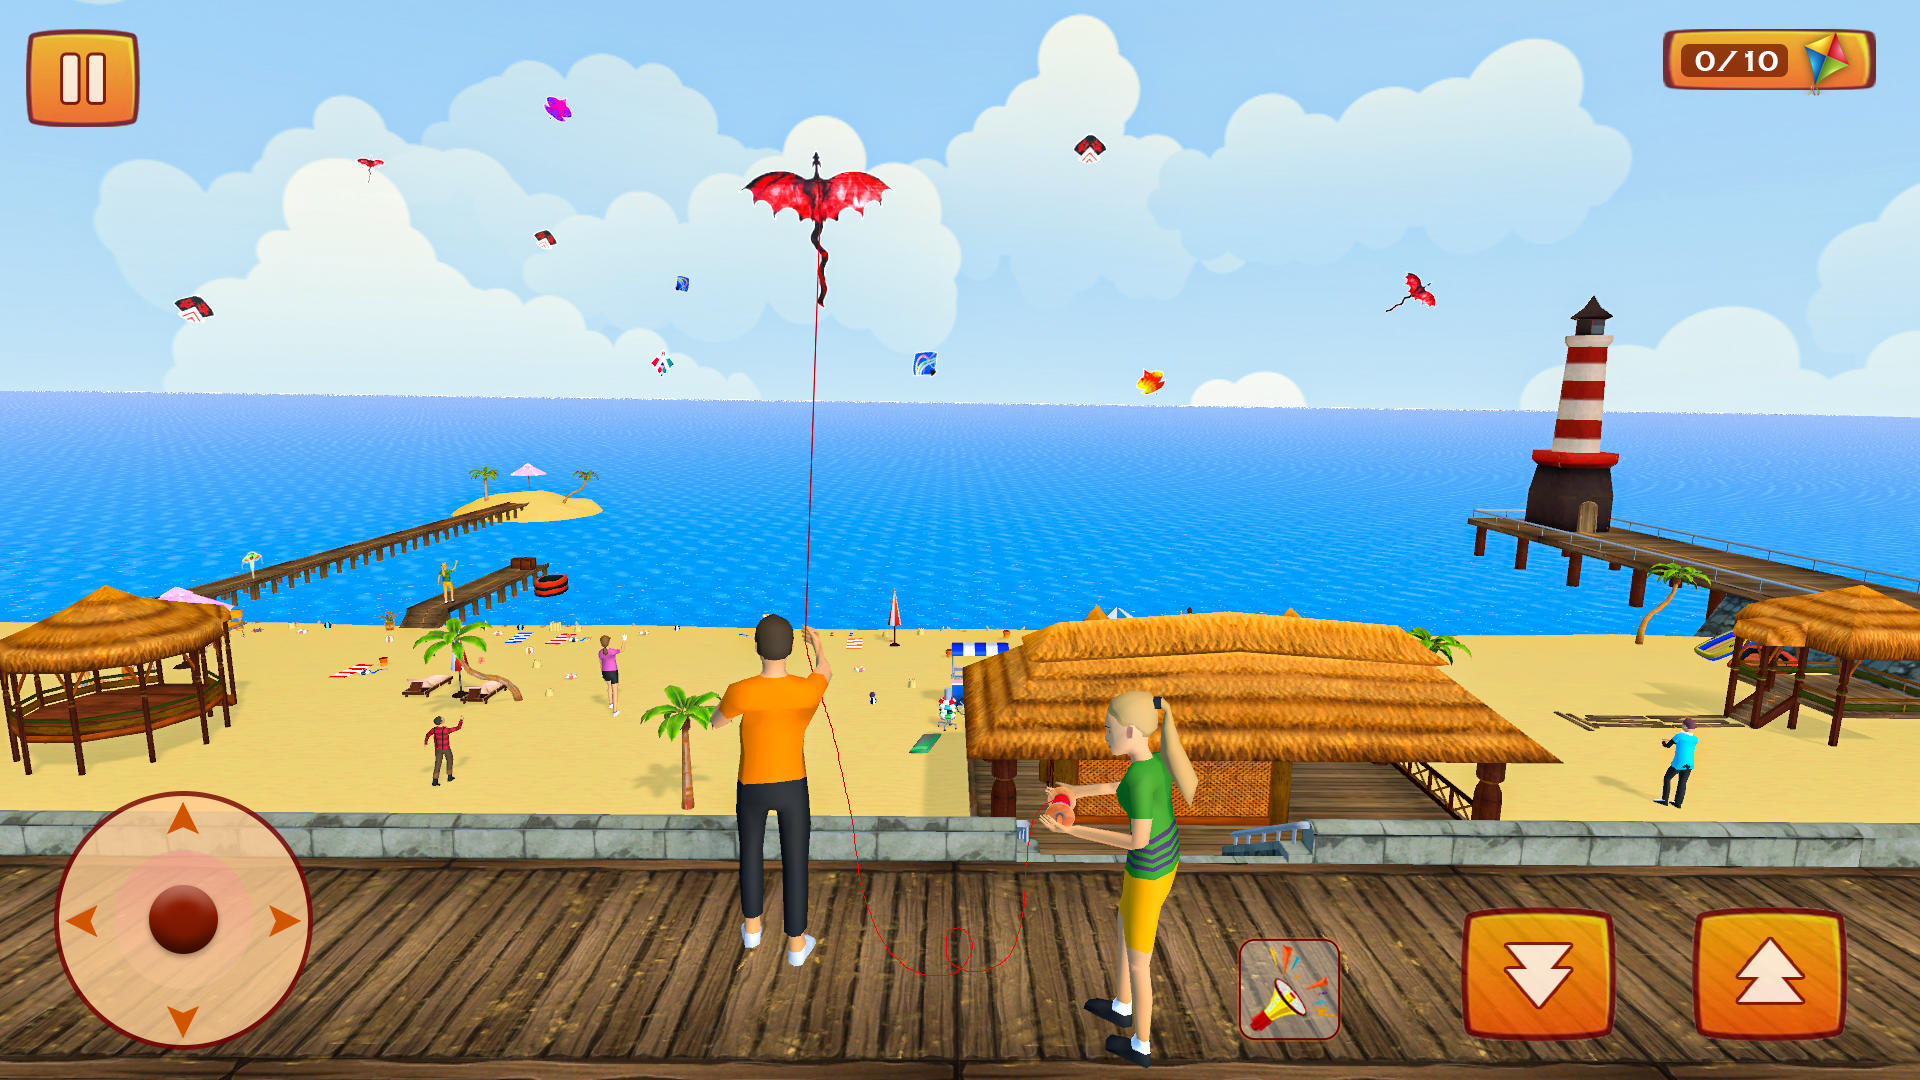 Screenshot 1 of Permainan Layang-layang: Permainan Layang-layang 3D 2.9